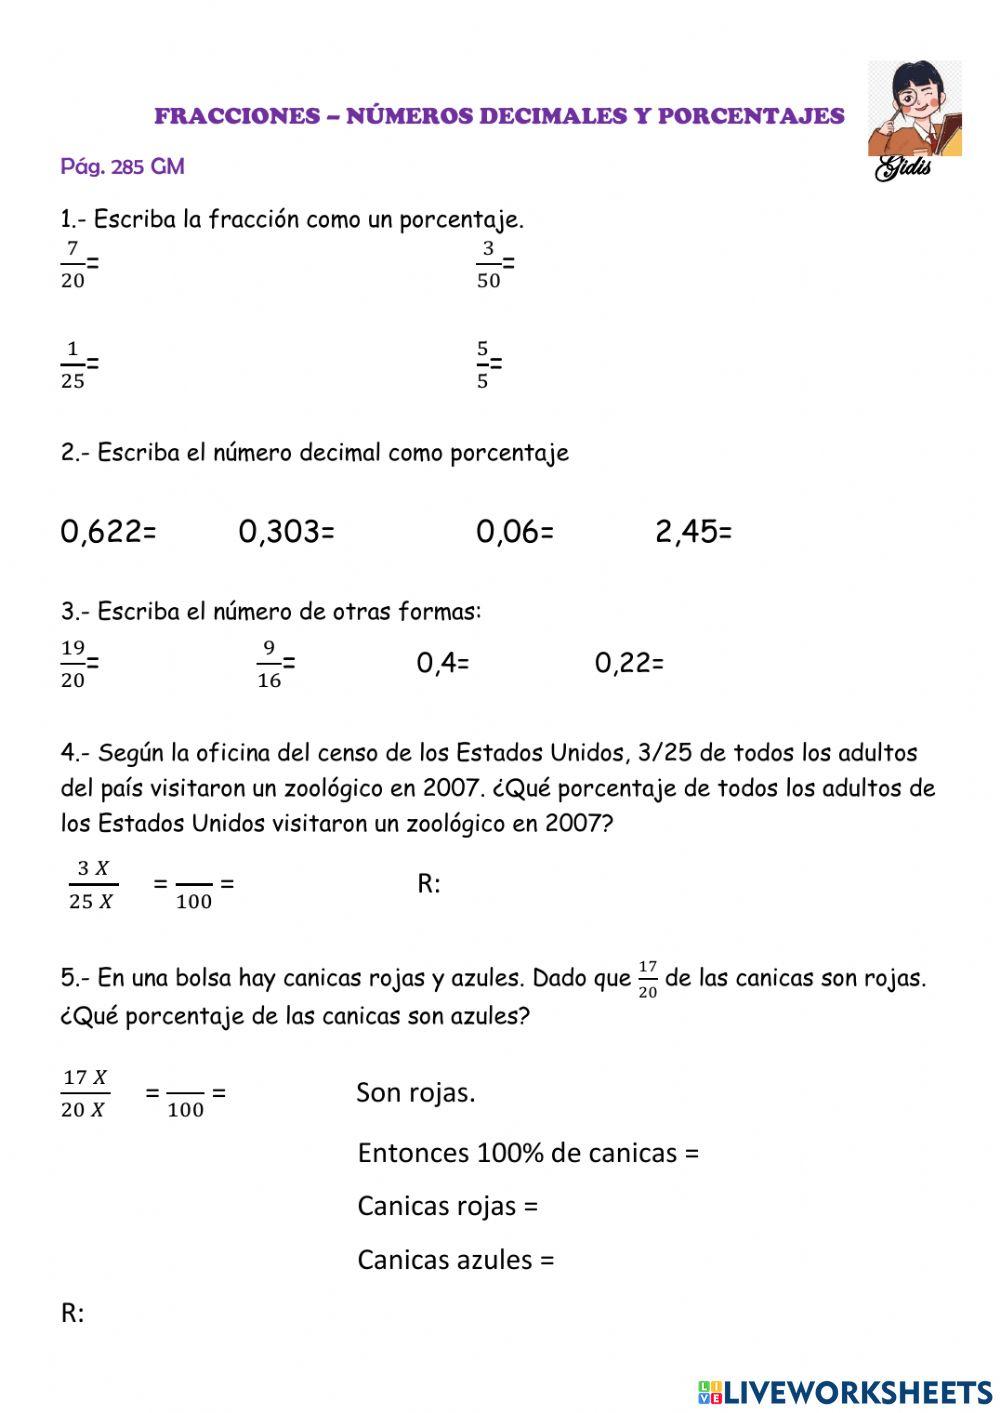 Fracciones, decimales y porcentajes